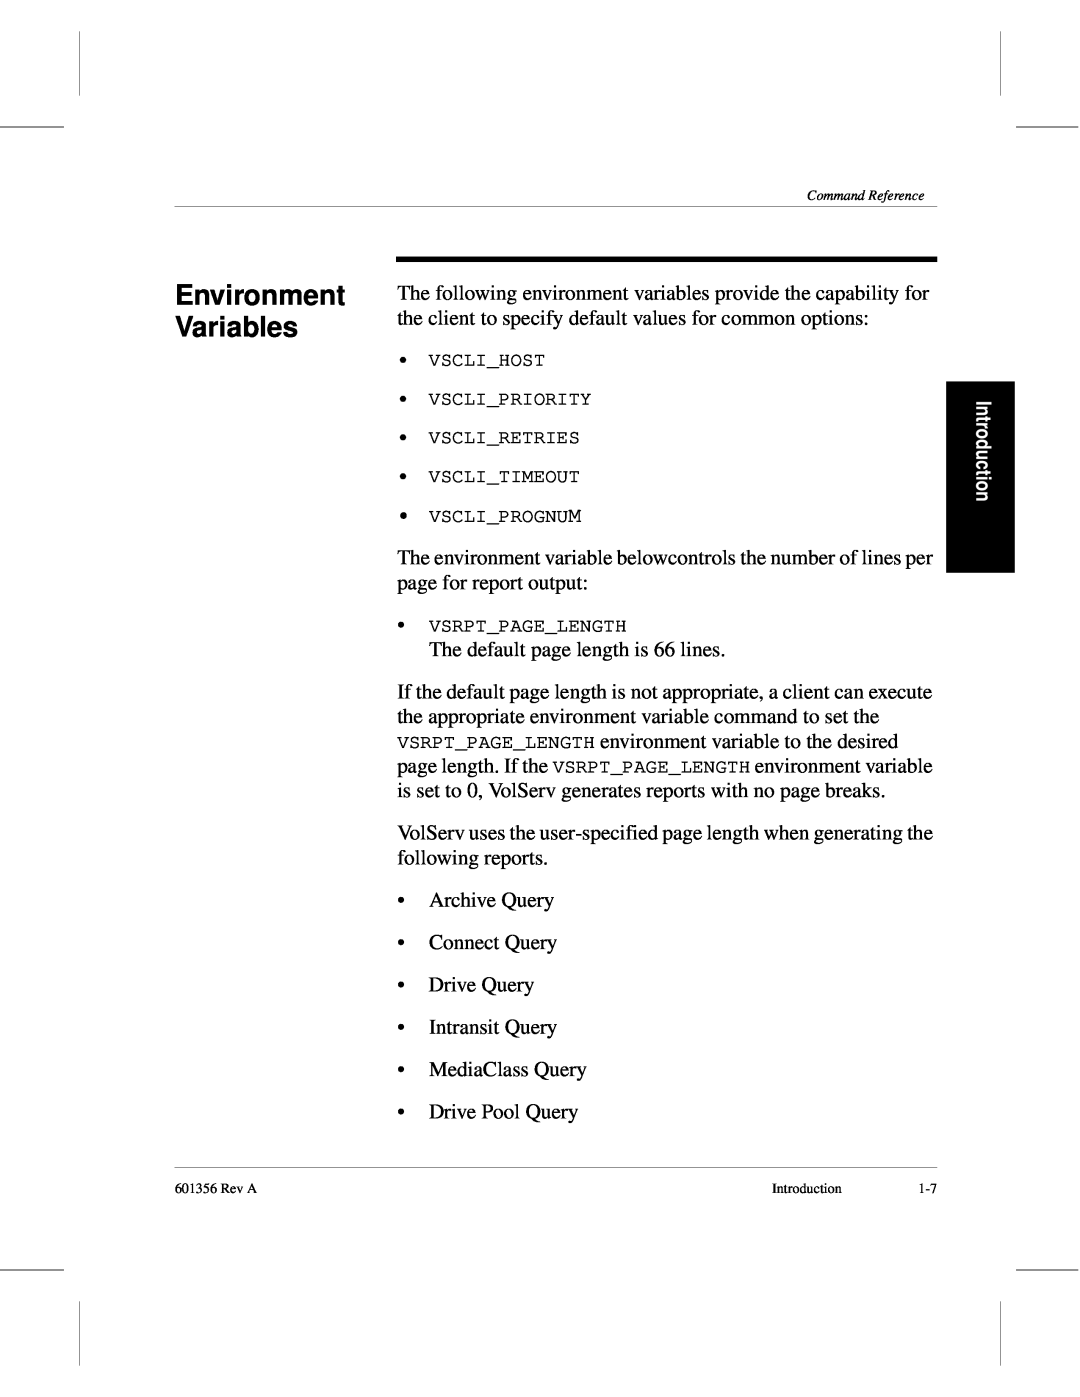 ADIC 601356 manual Environment Variables, Introduction 